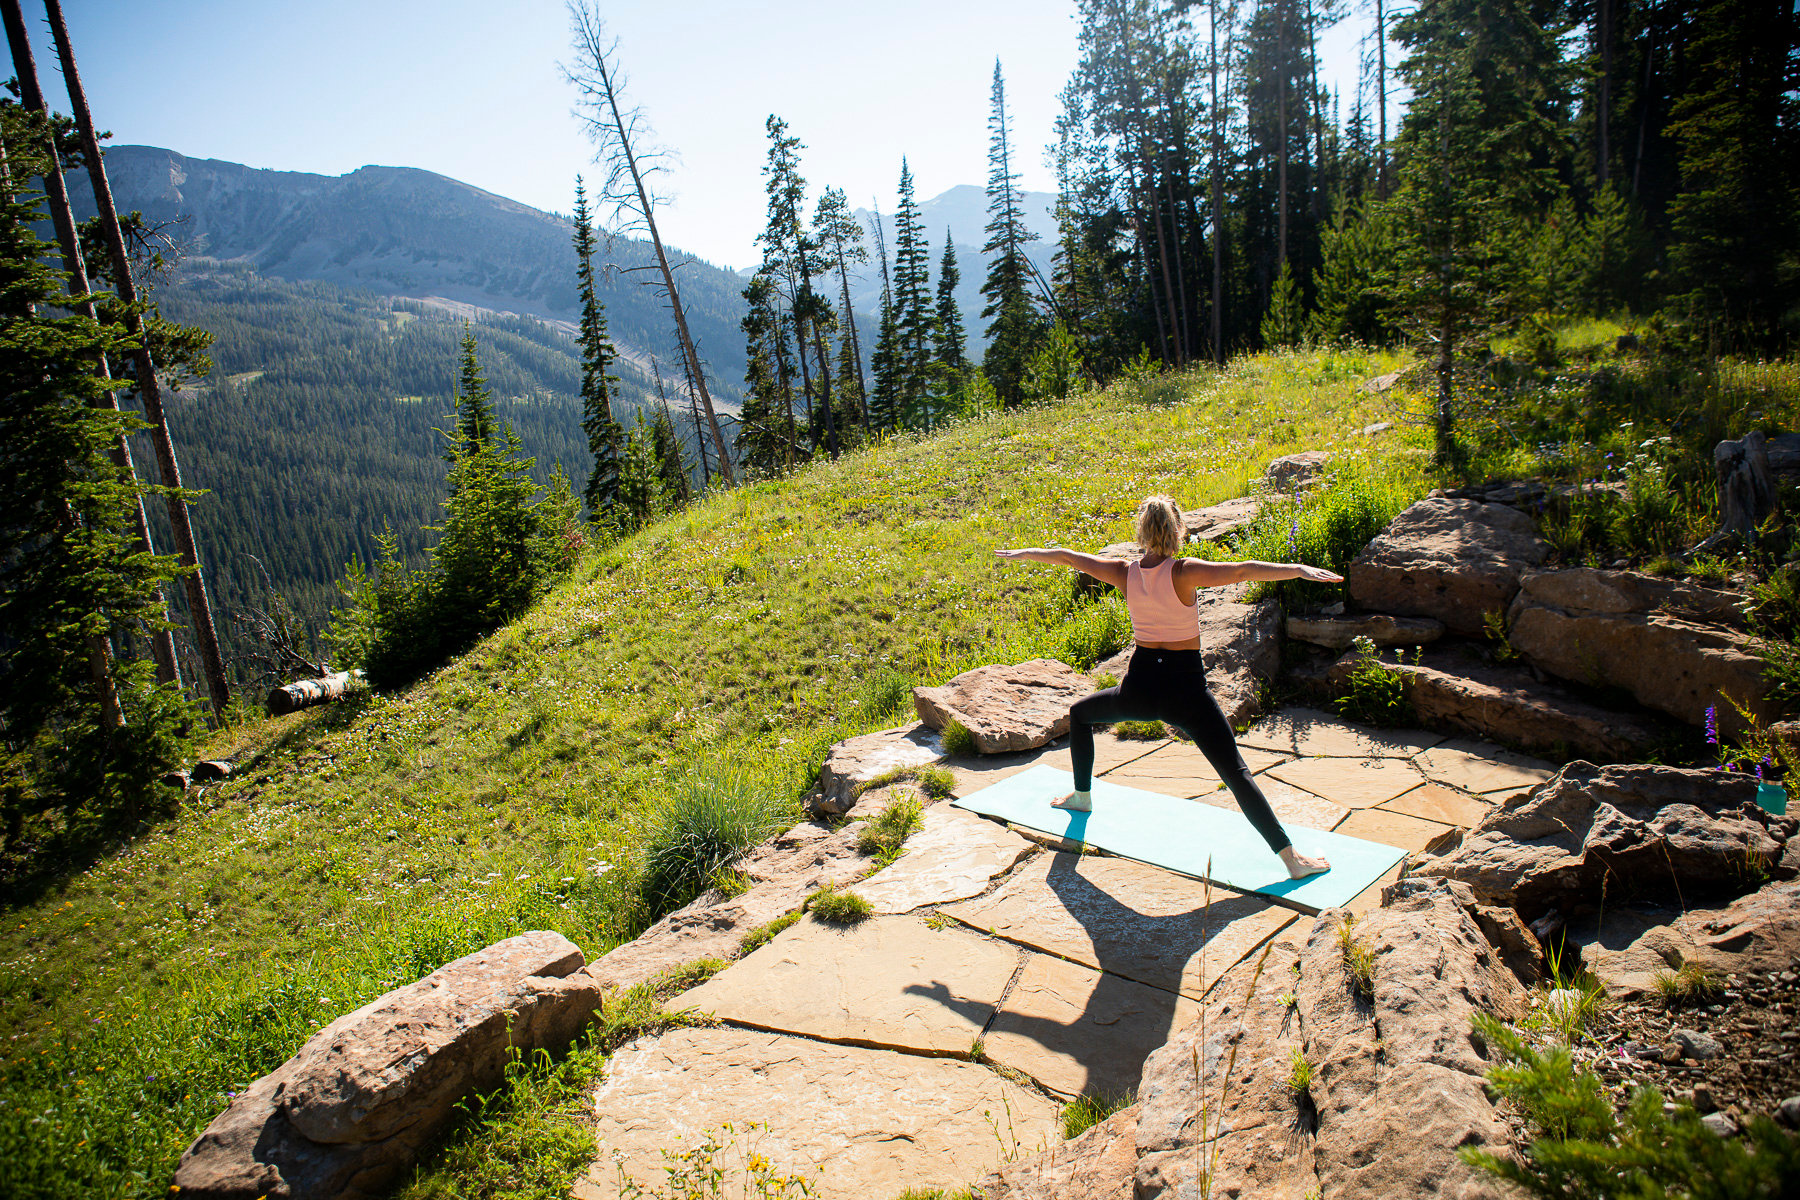 Yoga space for your Montana backyard